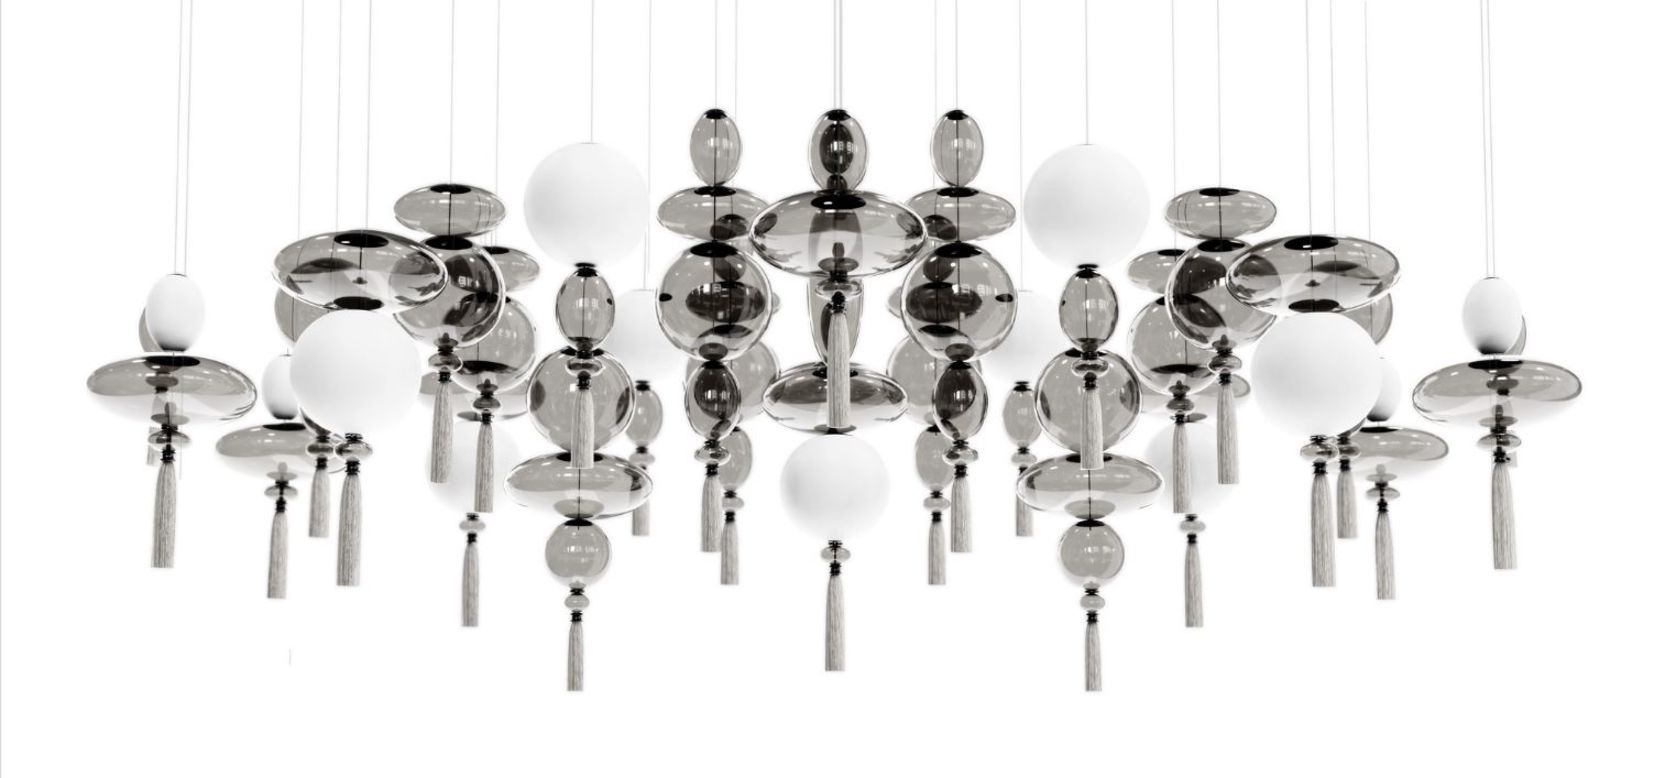 WonderGlass chandeliers by Marcel Wanders